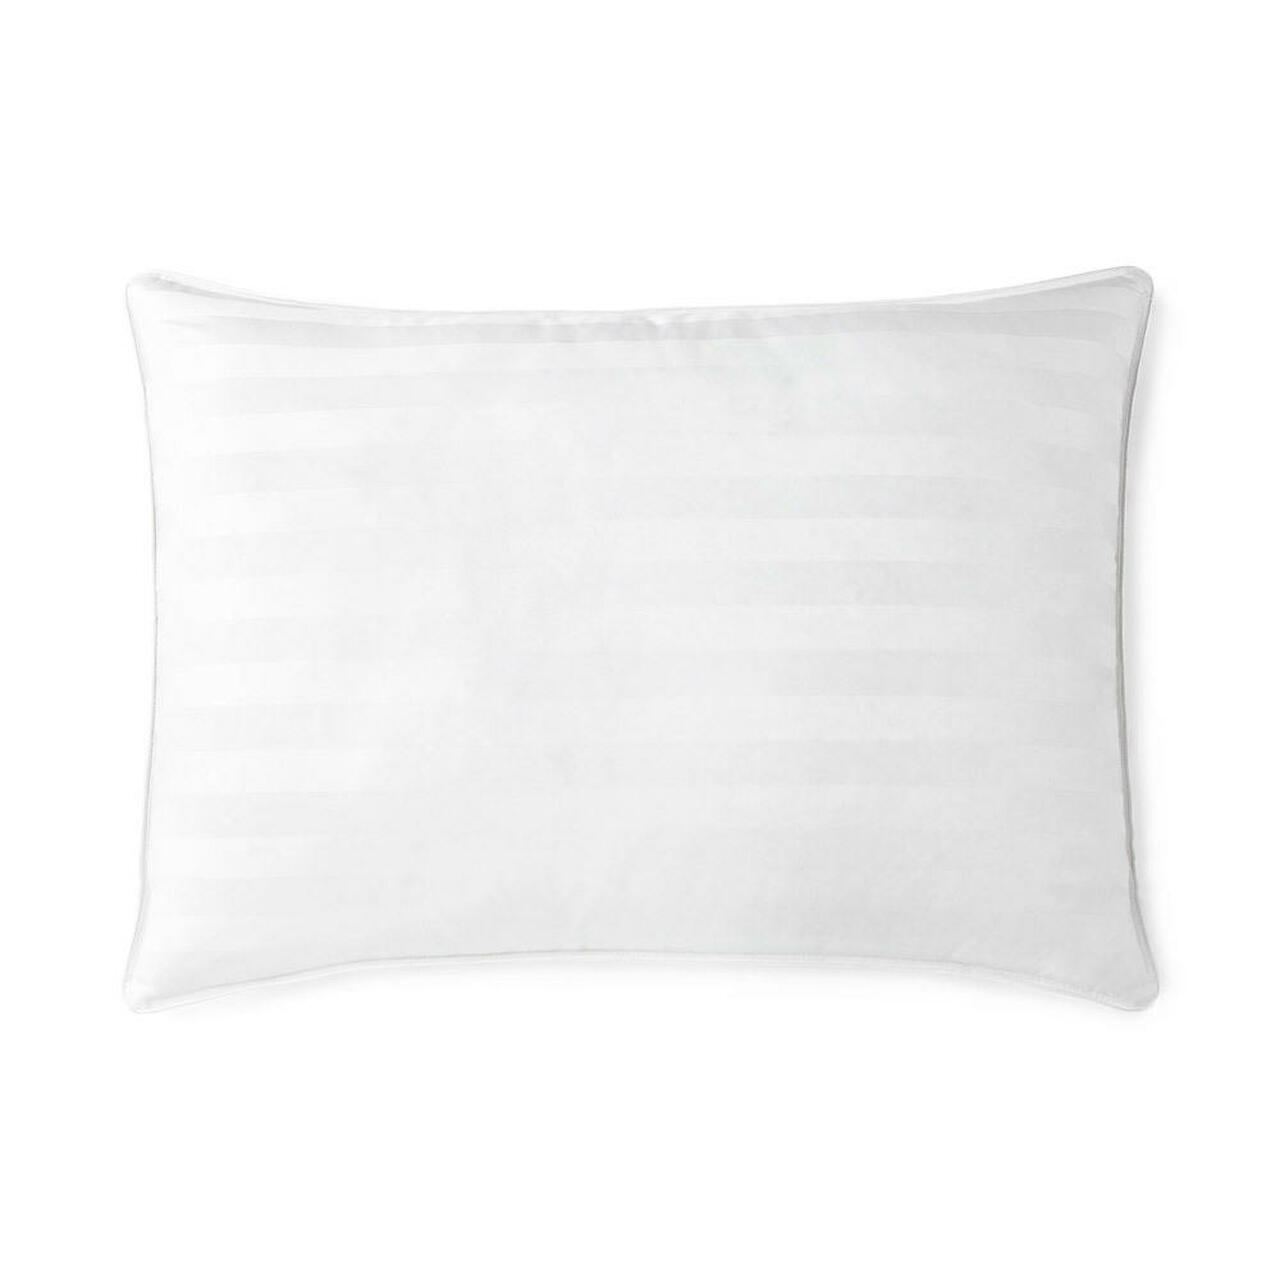 Shop Stearns & Foster® Pillows